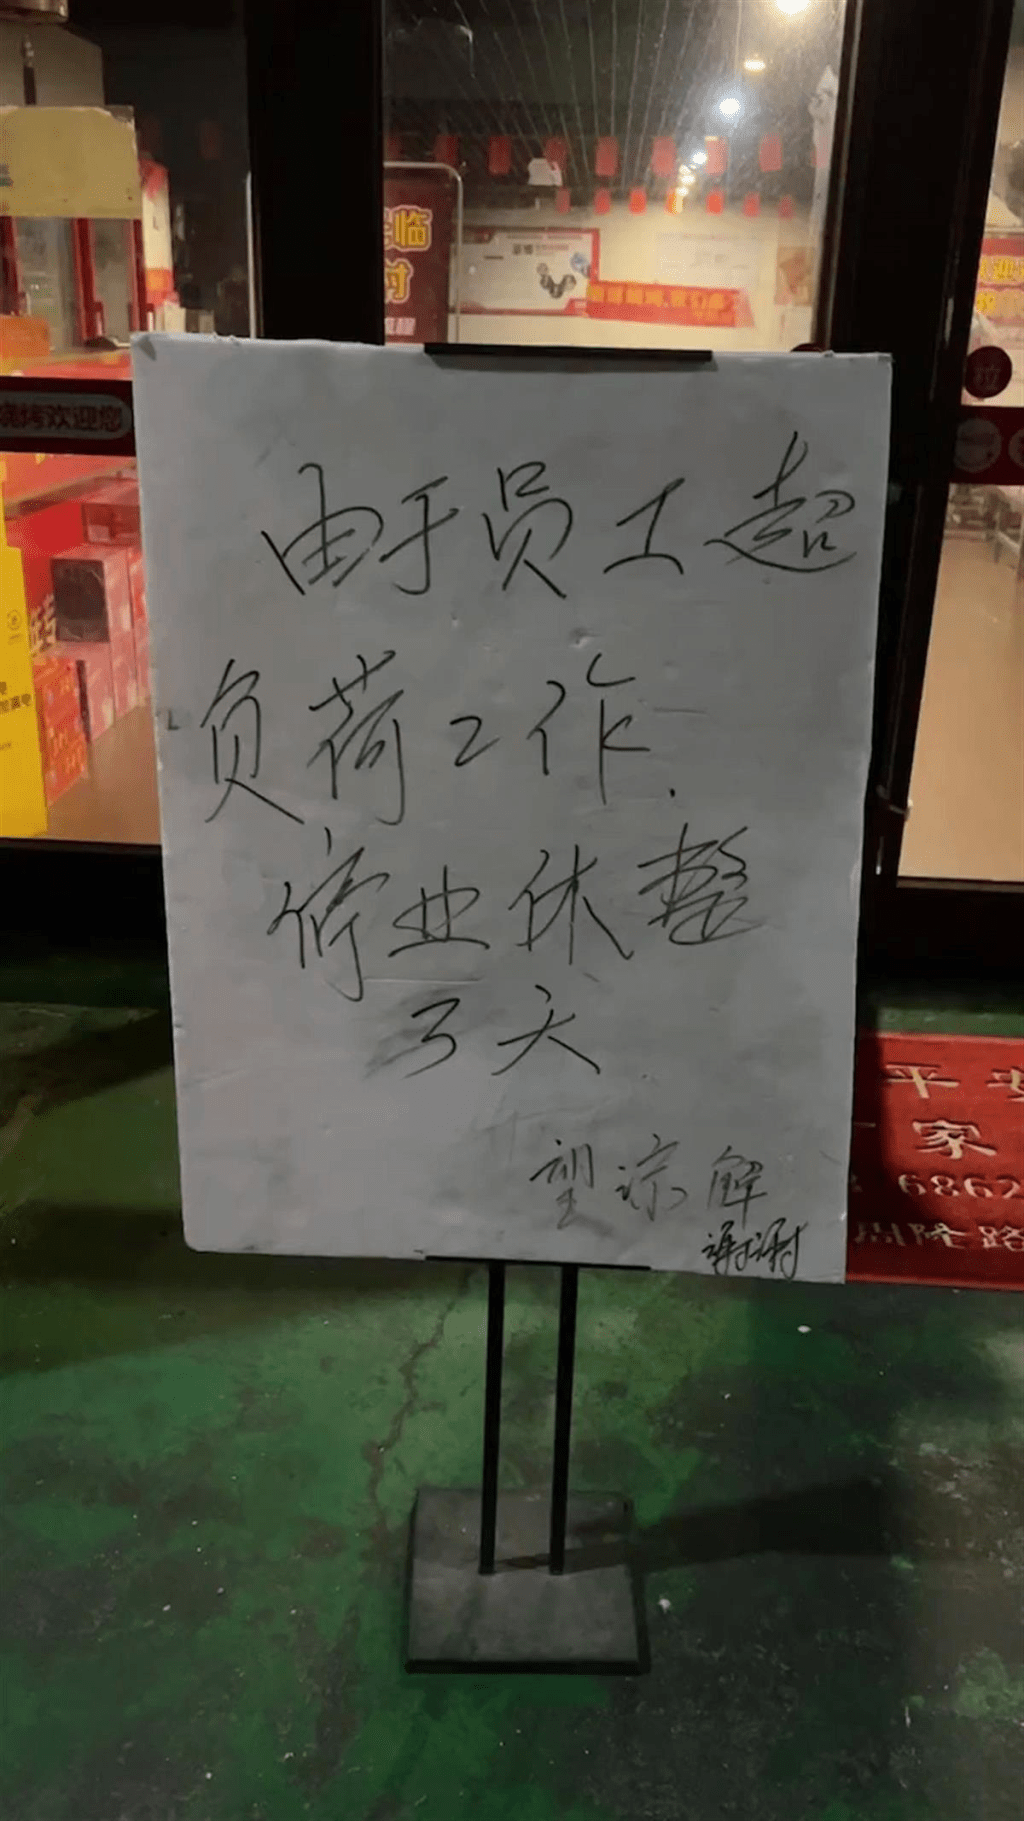 淄博一家烧烤店门前贴出了一则「停业休整三天」的通知，成为了网民热烈讨论的话题。